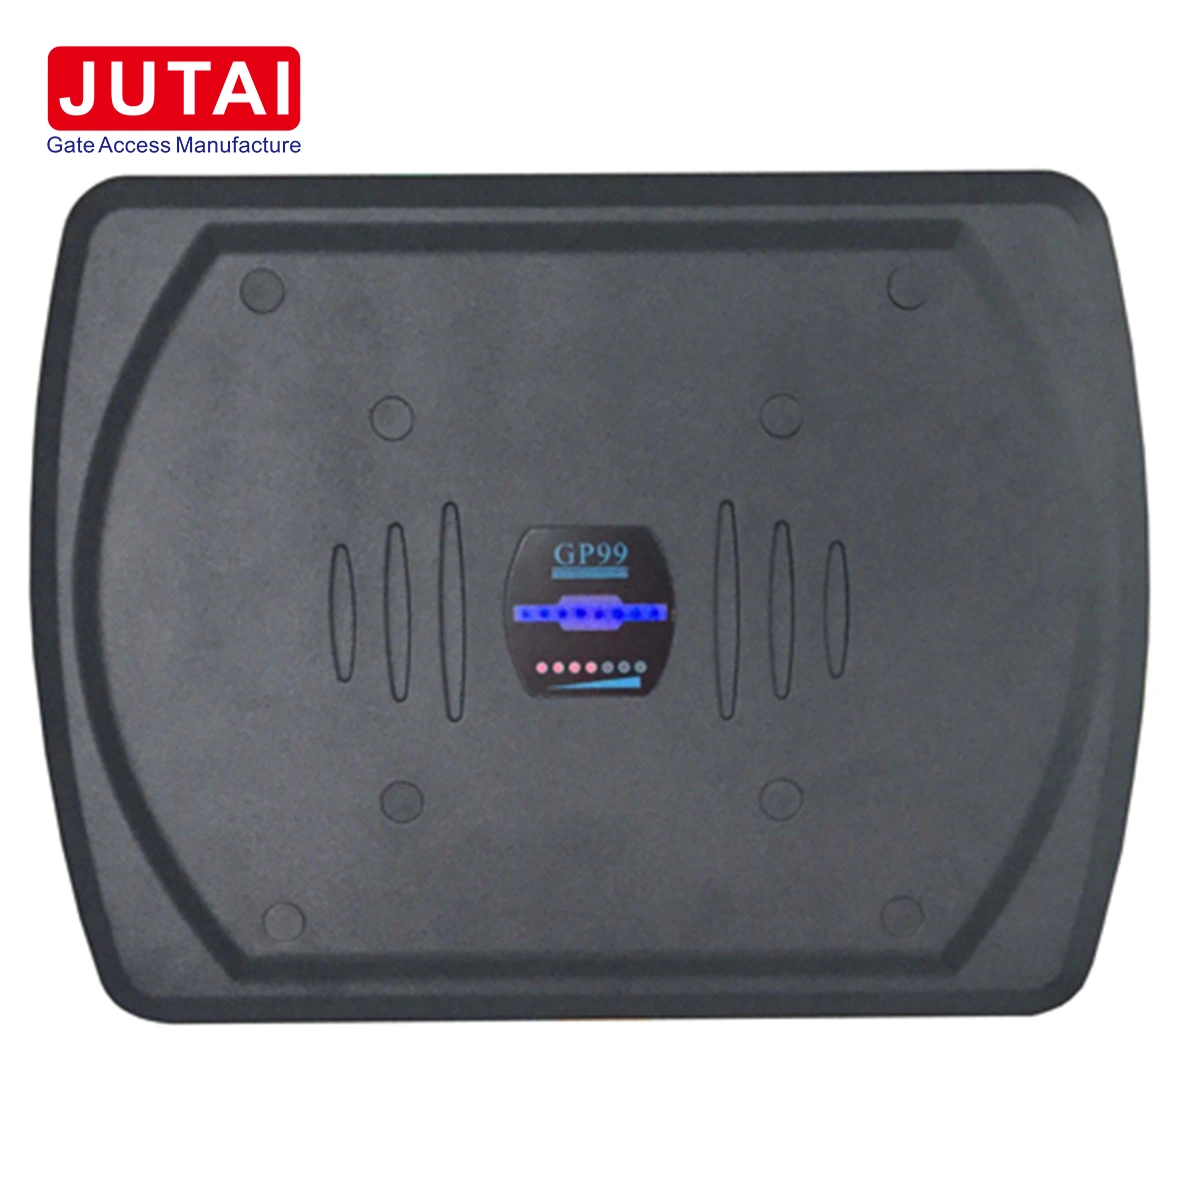 Imperméable Jutai sans contact Lecteur de carte de proximité gp99 utilisé dans le système de contrôle d'accès